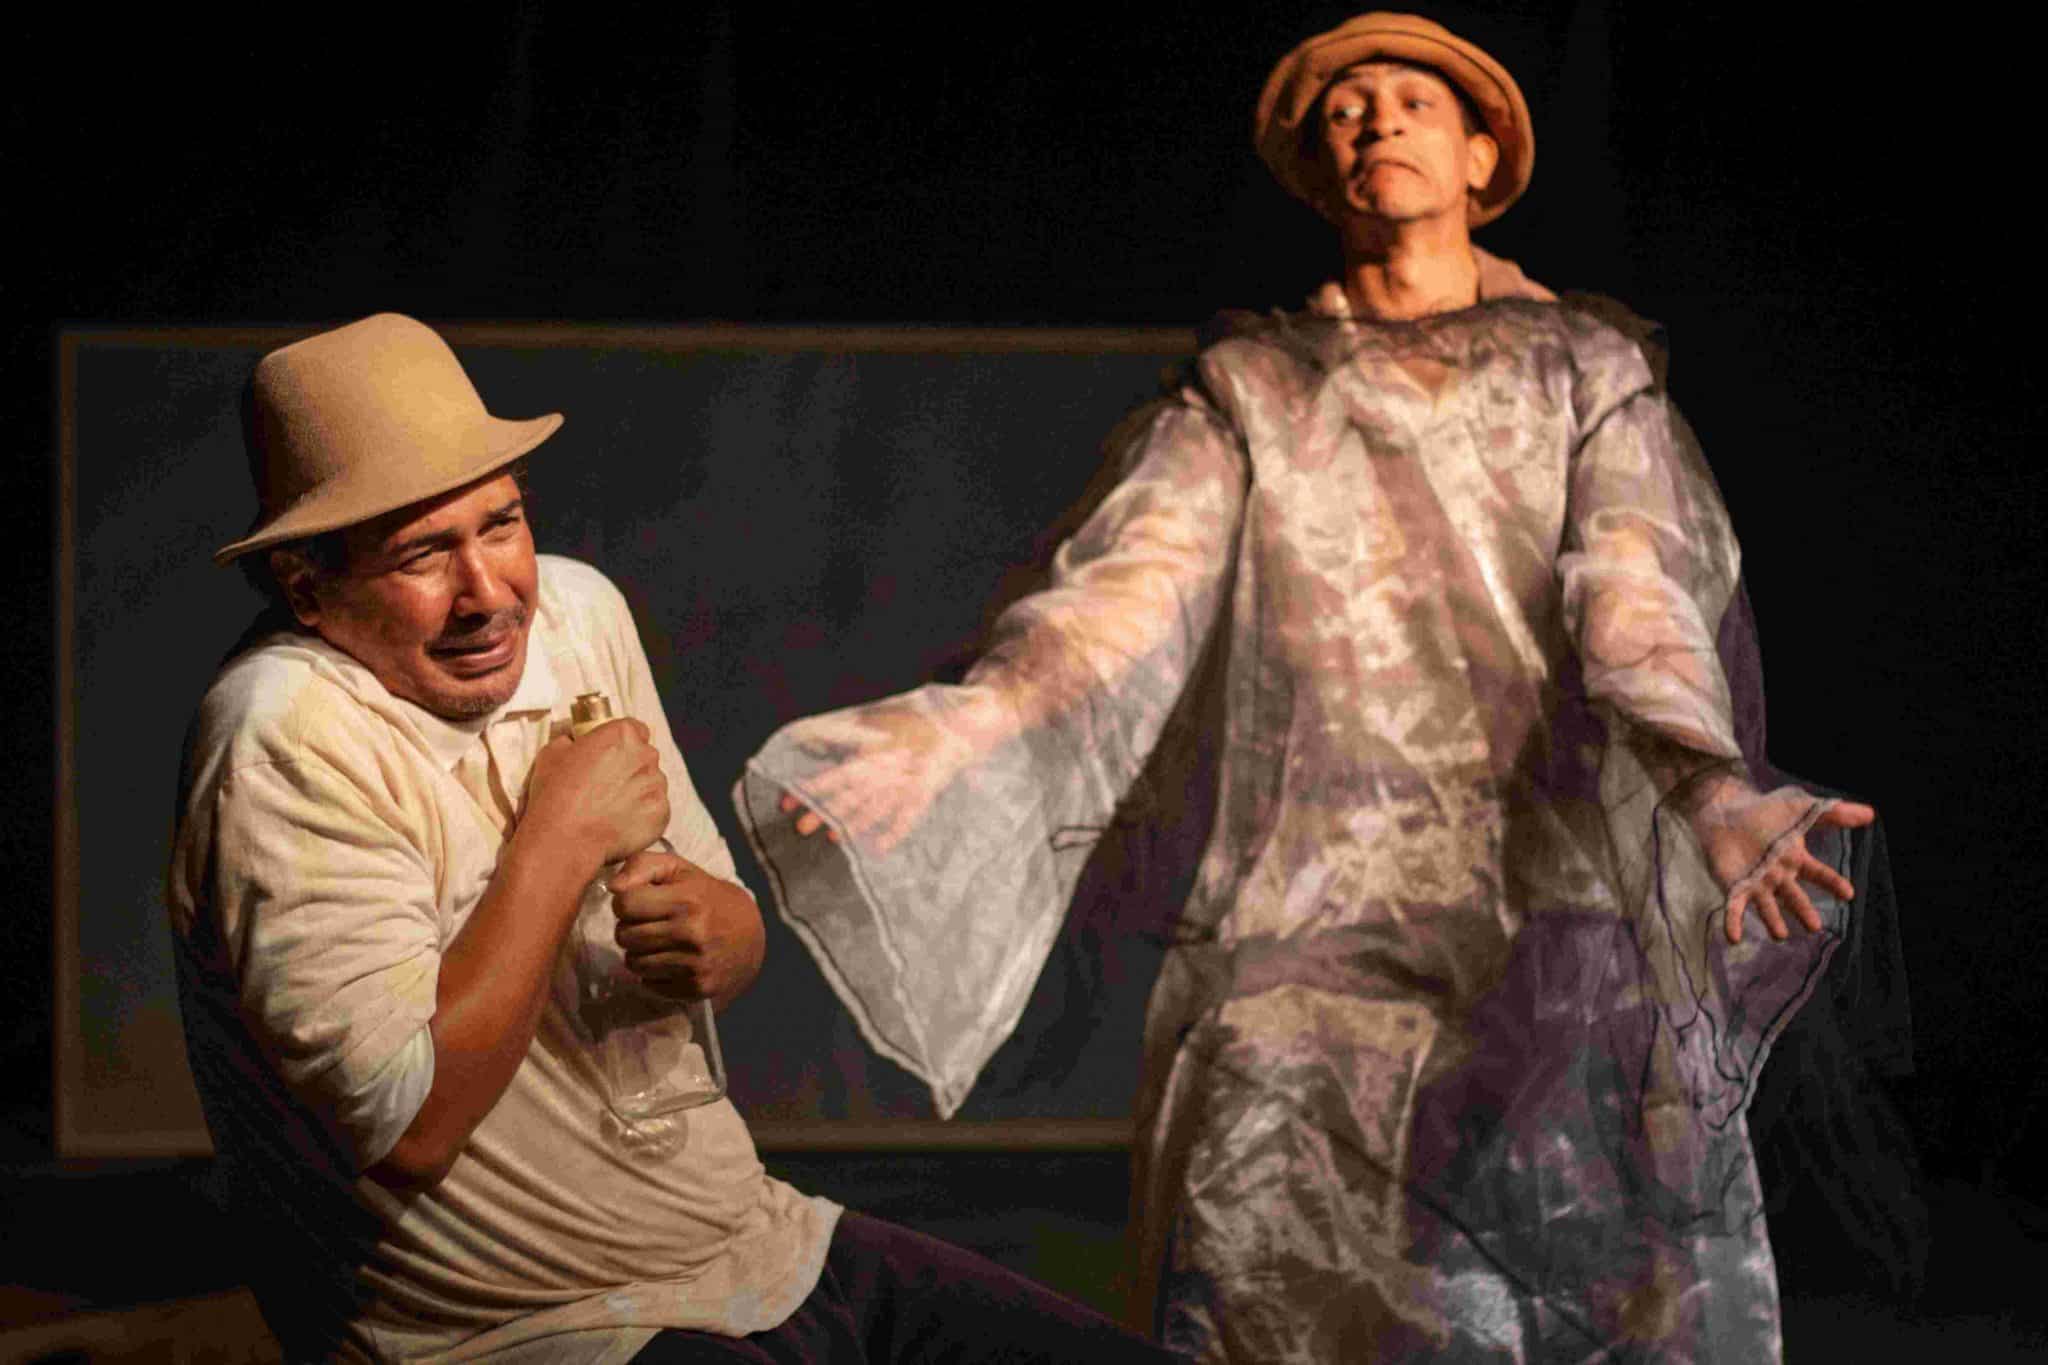 revistaprosaversoearte.com - Grupo Pandora de Teatro reestreia espetáculo 'Comum', com temporada no Teatro Alfredo Mesquita